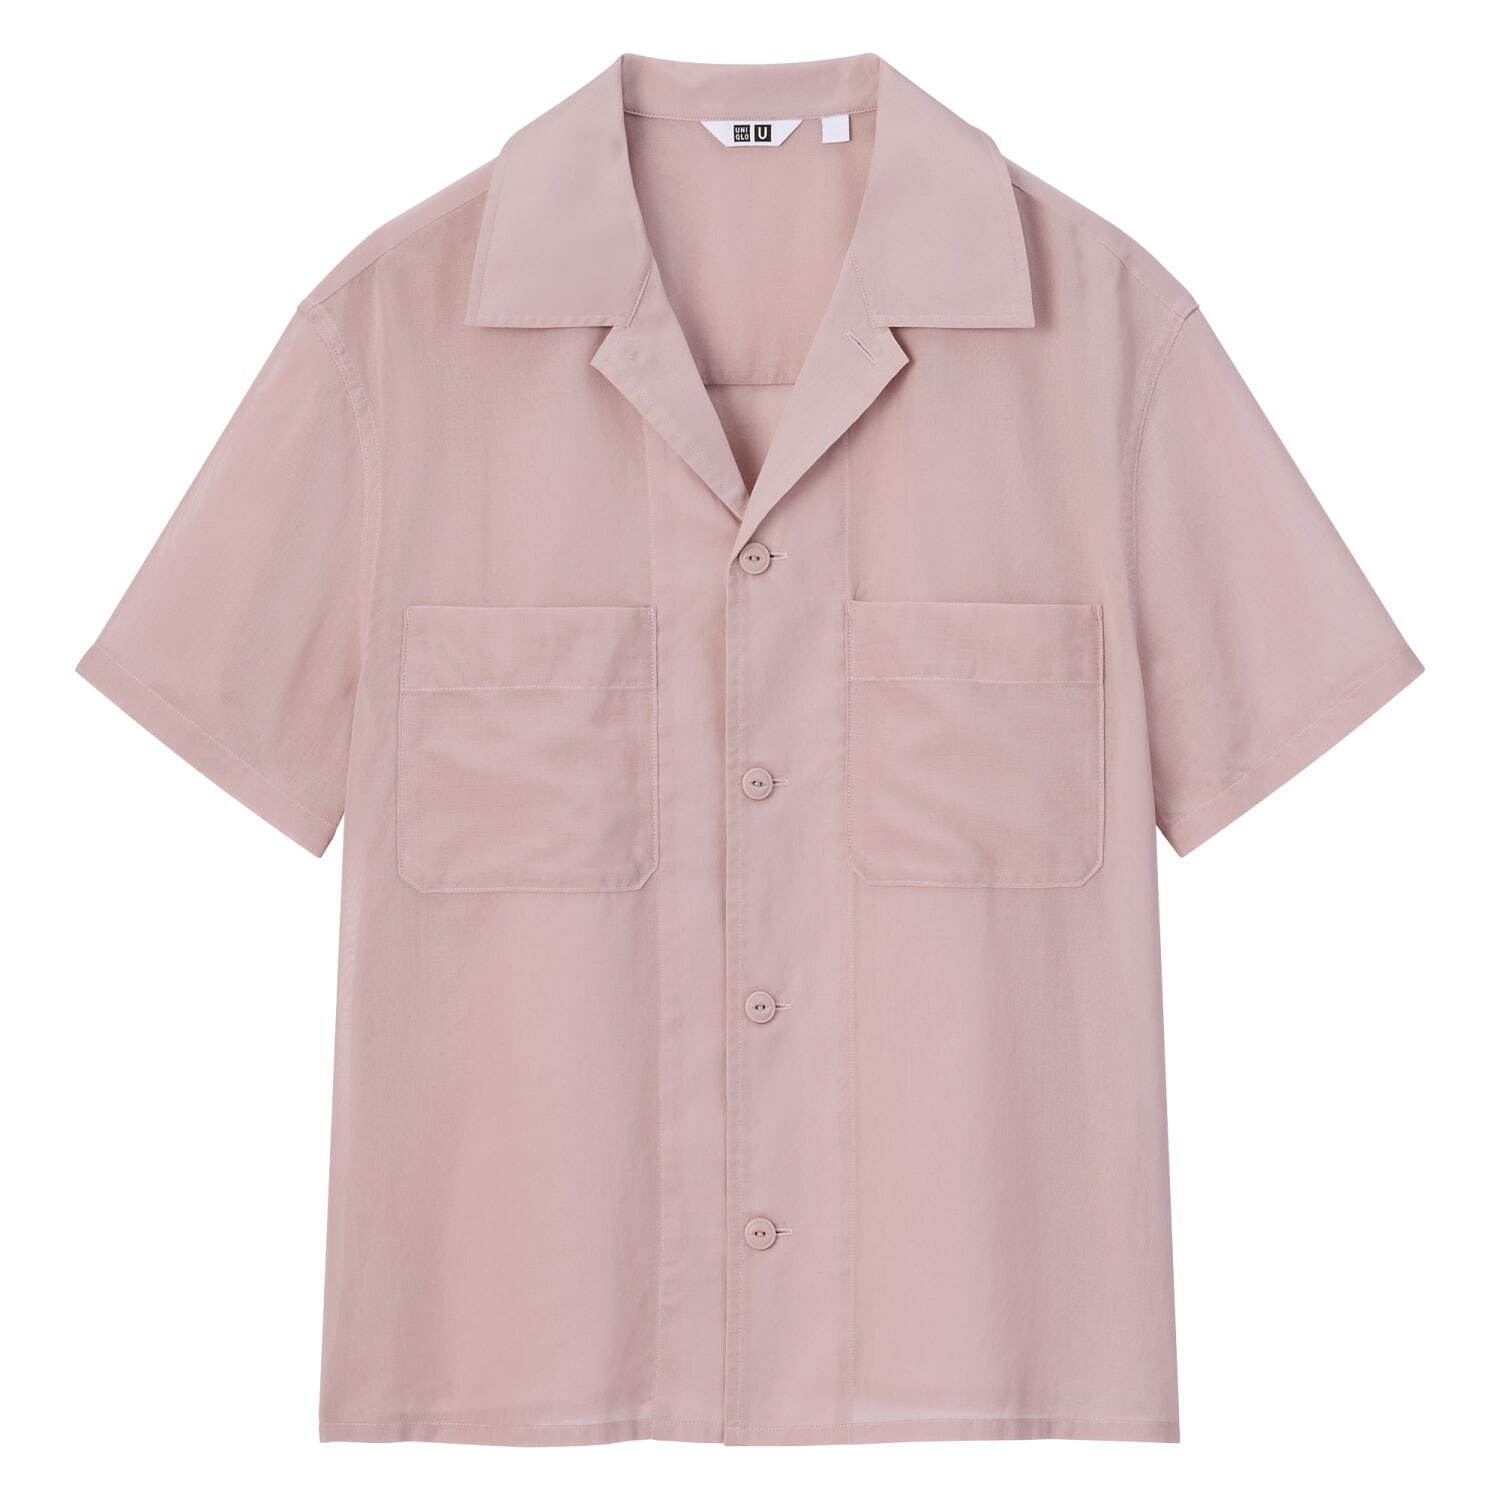 シアーコットンシャツ(半袖) 2,990円